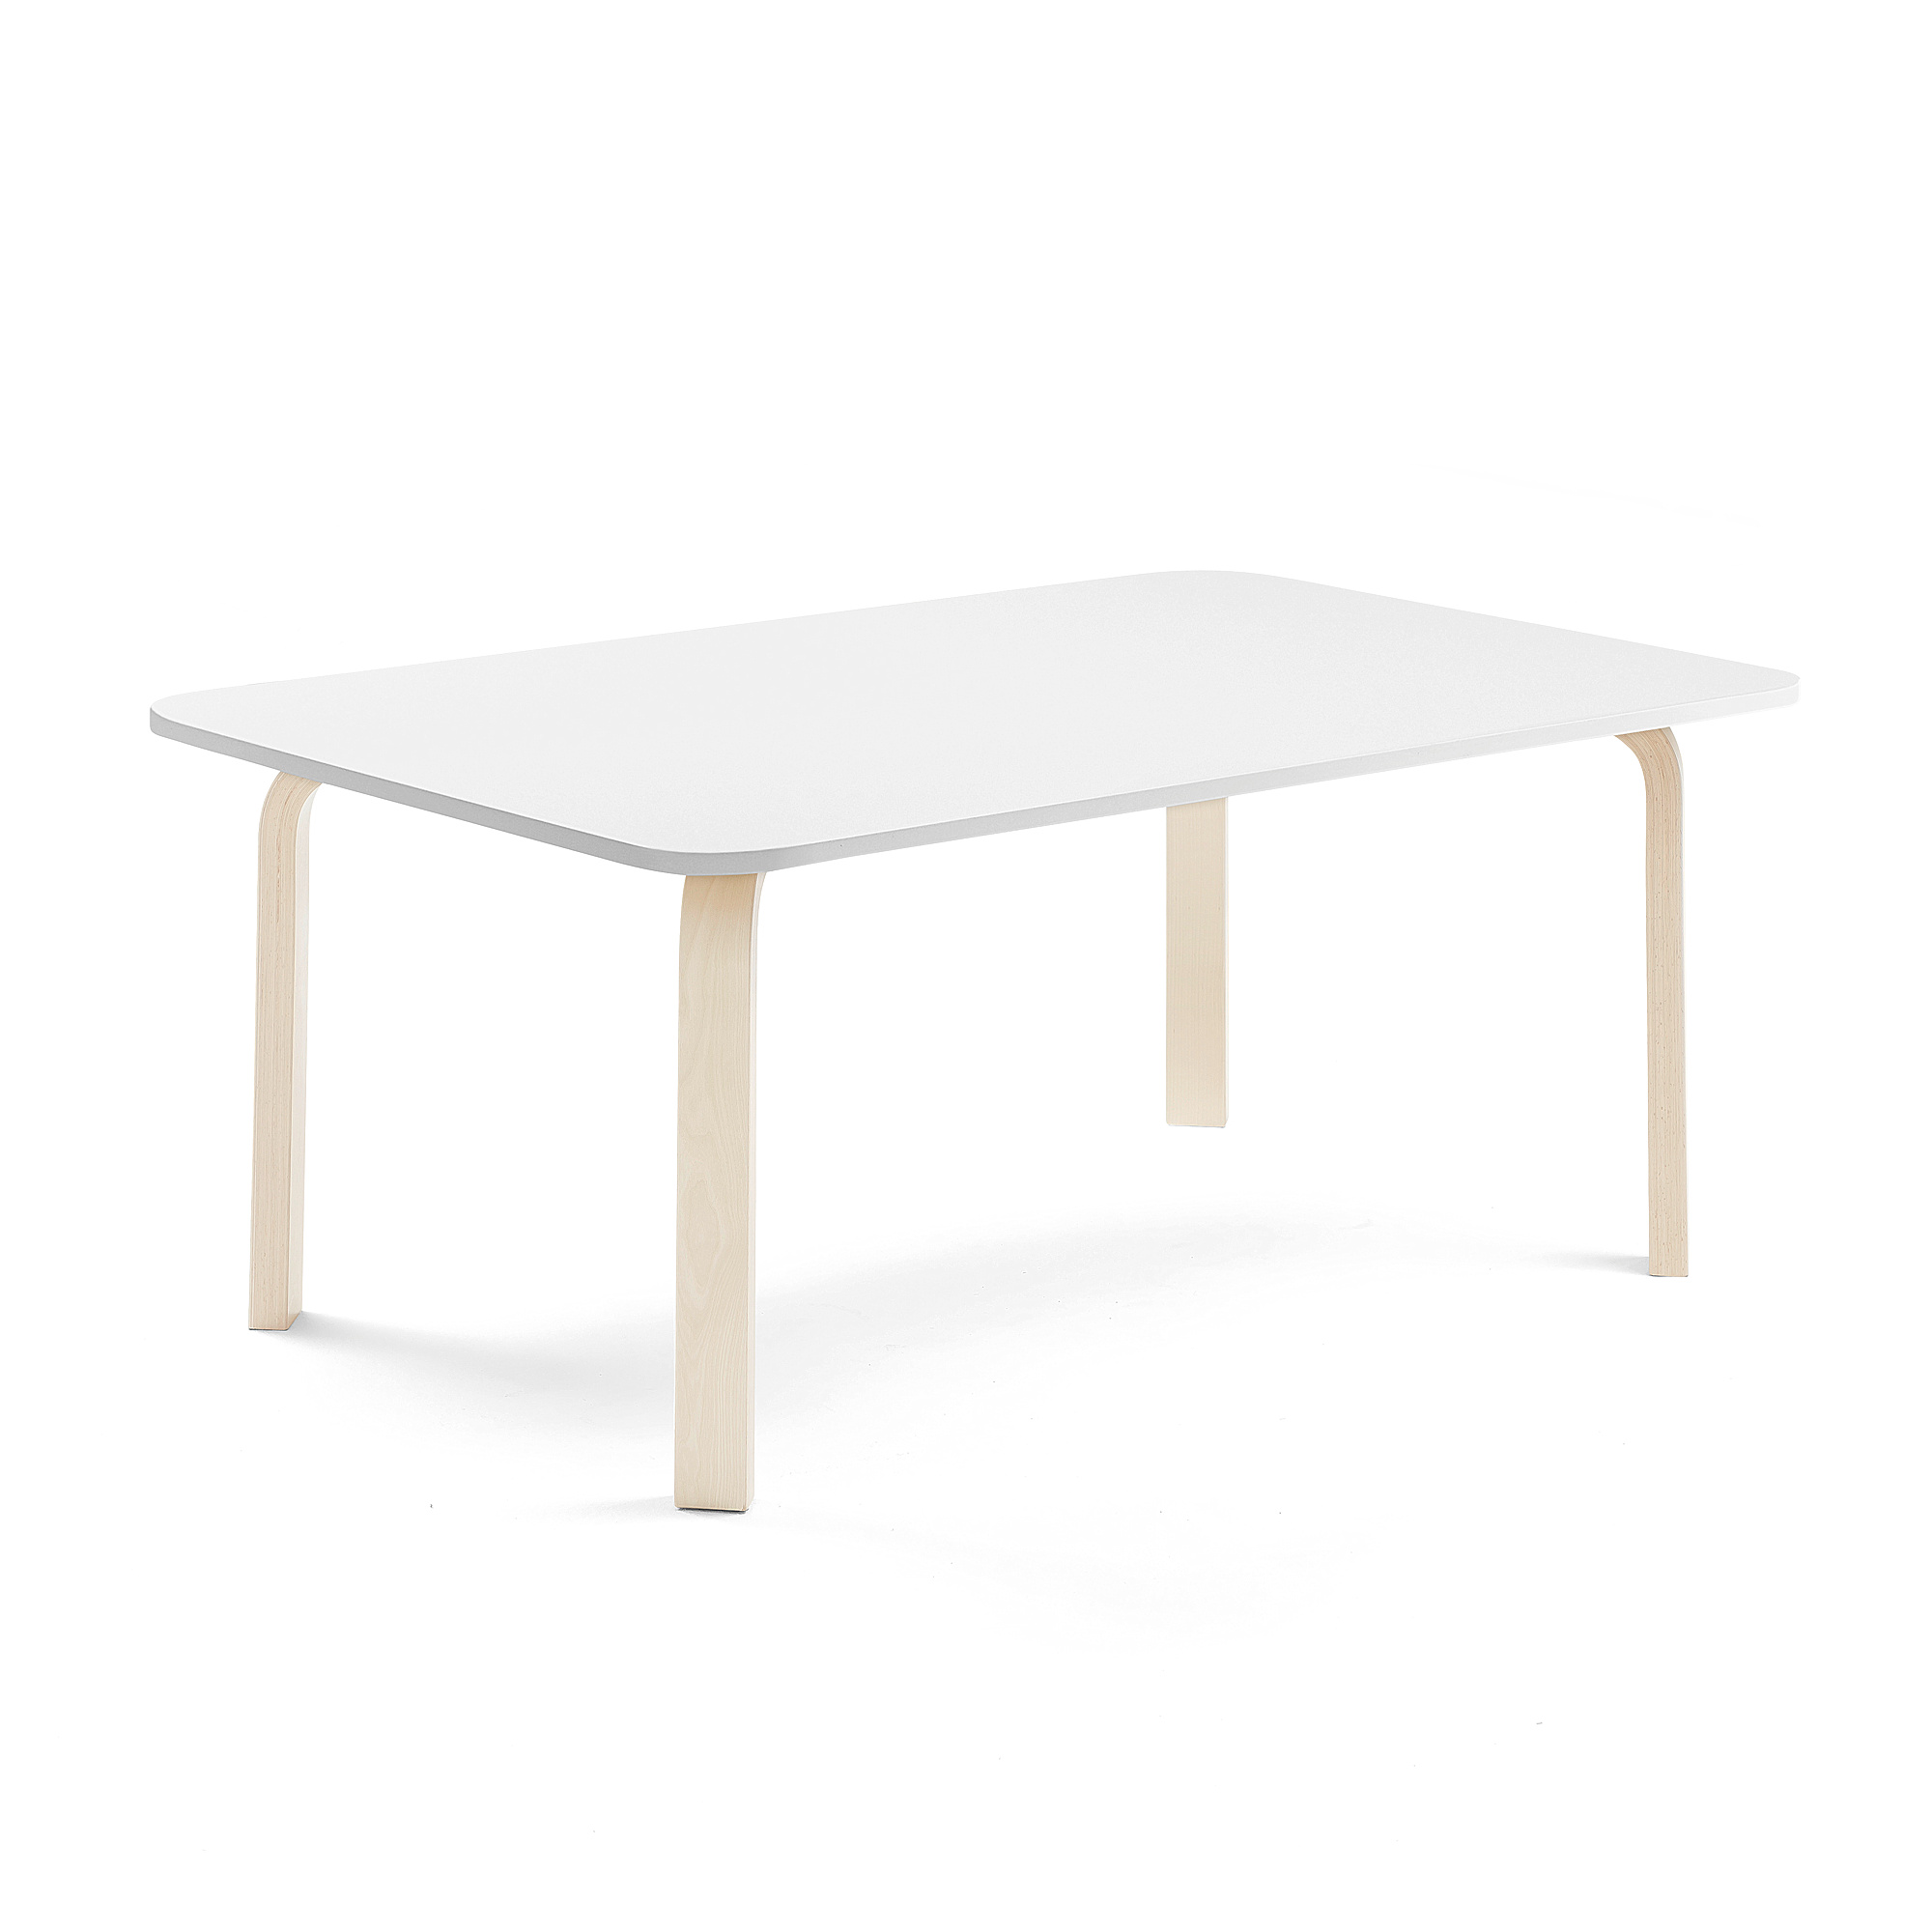 Stůl ELTON, 1400x800x530 mm, bříza, akustická HPL deska, bílá